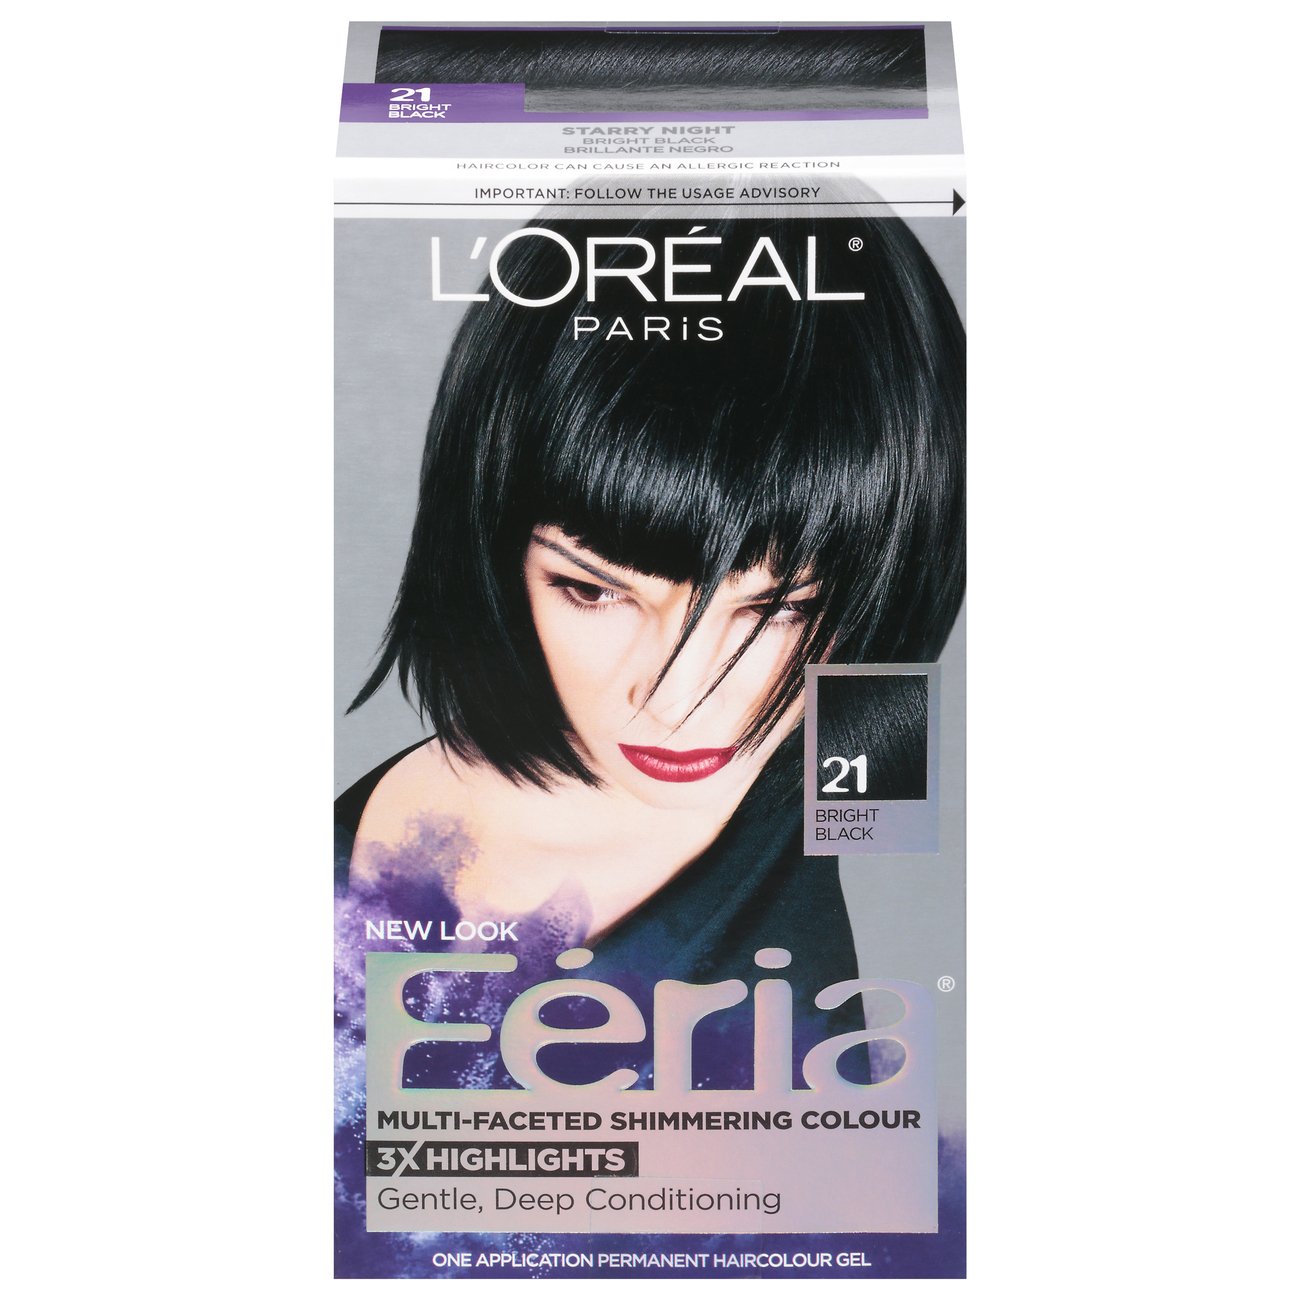 L'Oréal Paris Feria Multi-Faceted Permanent Hair Color - 21 Bright Black -  Shop Hair Care at H-E-B